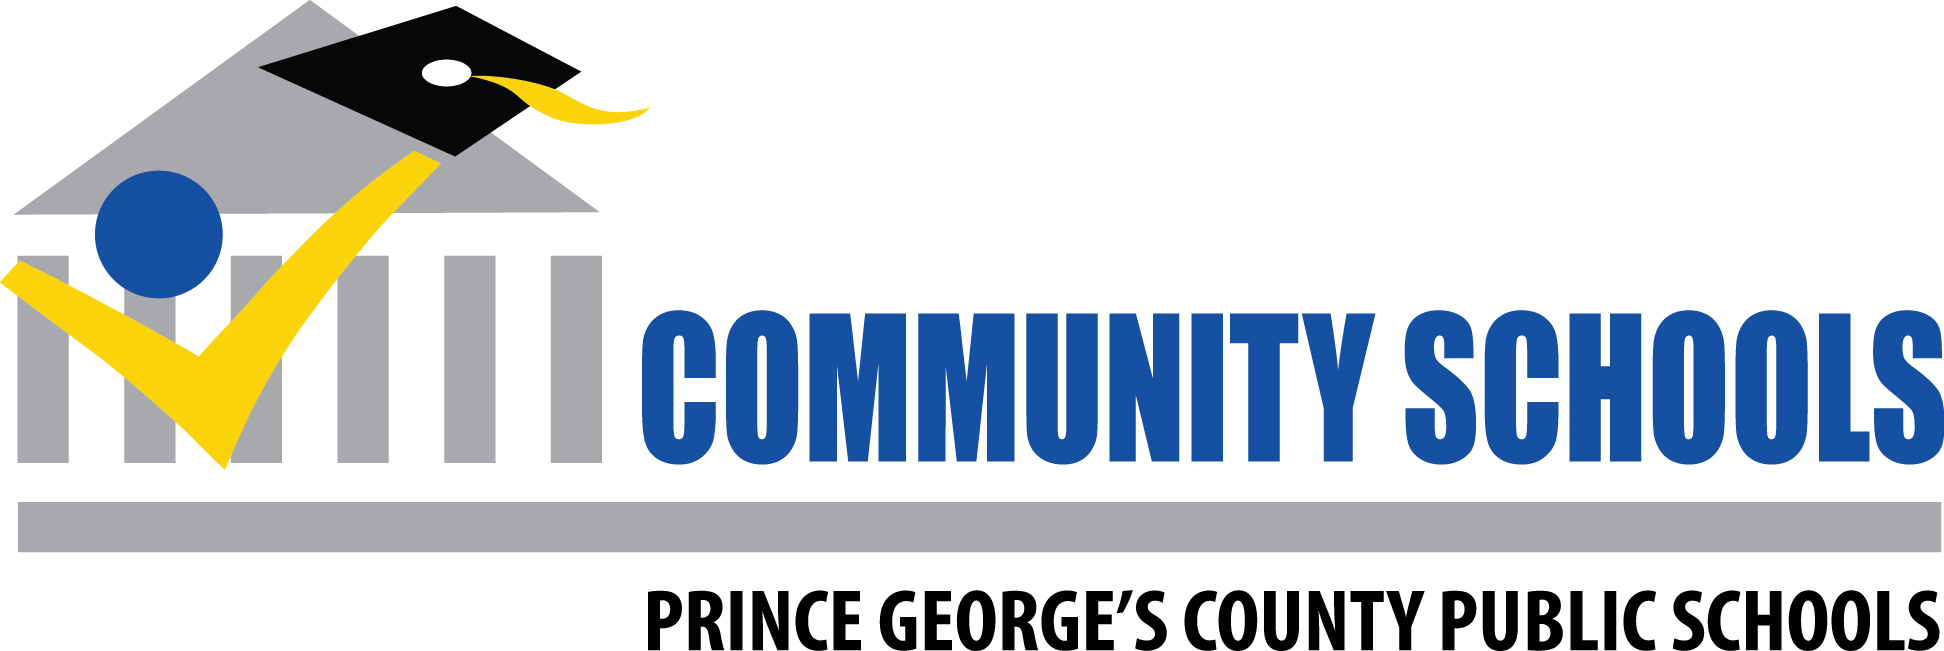 Community-schools-logo.png